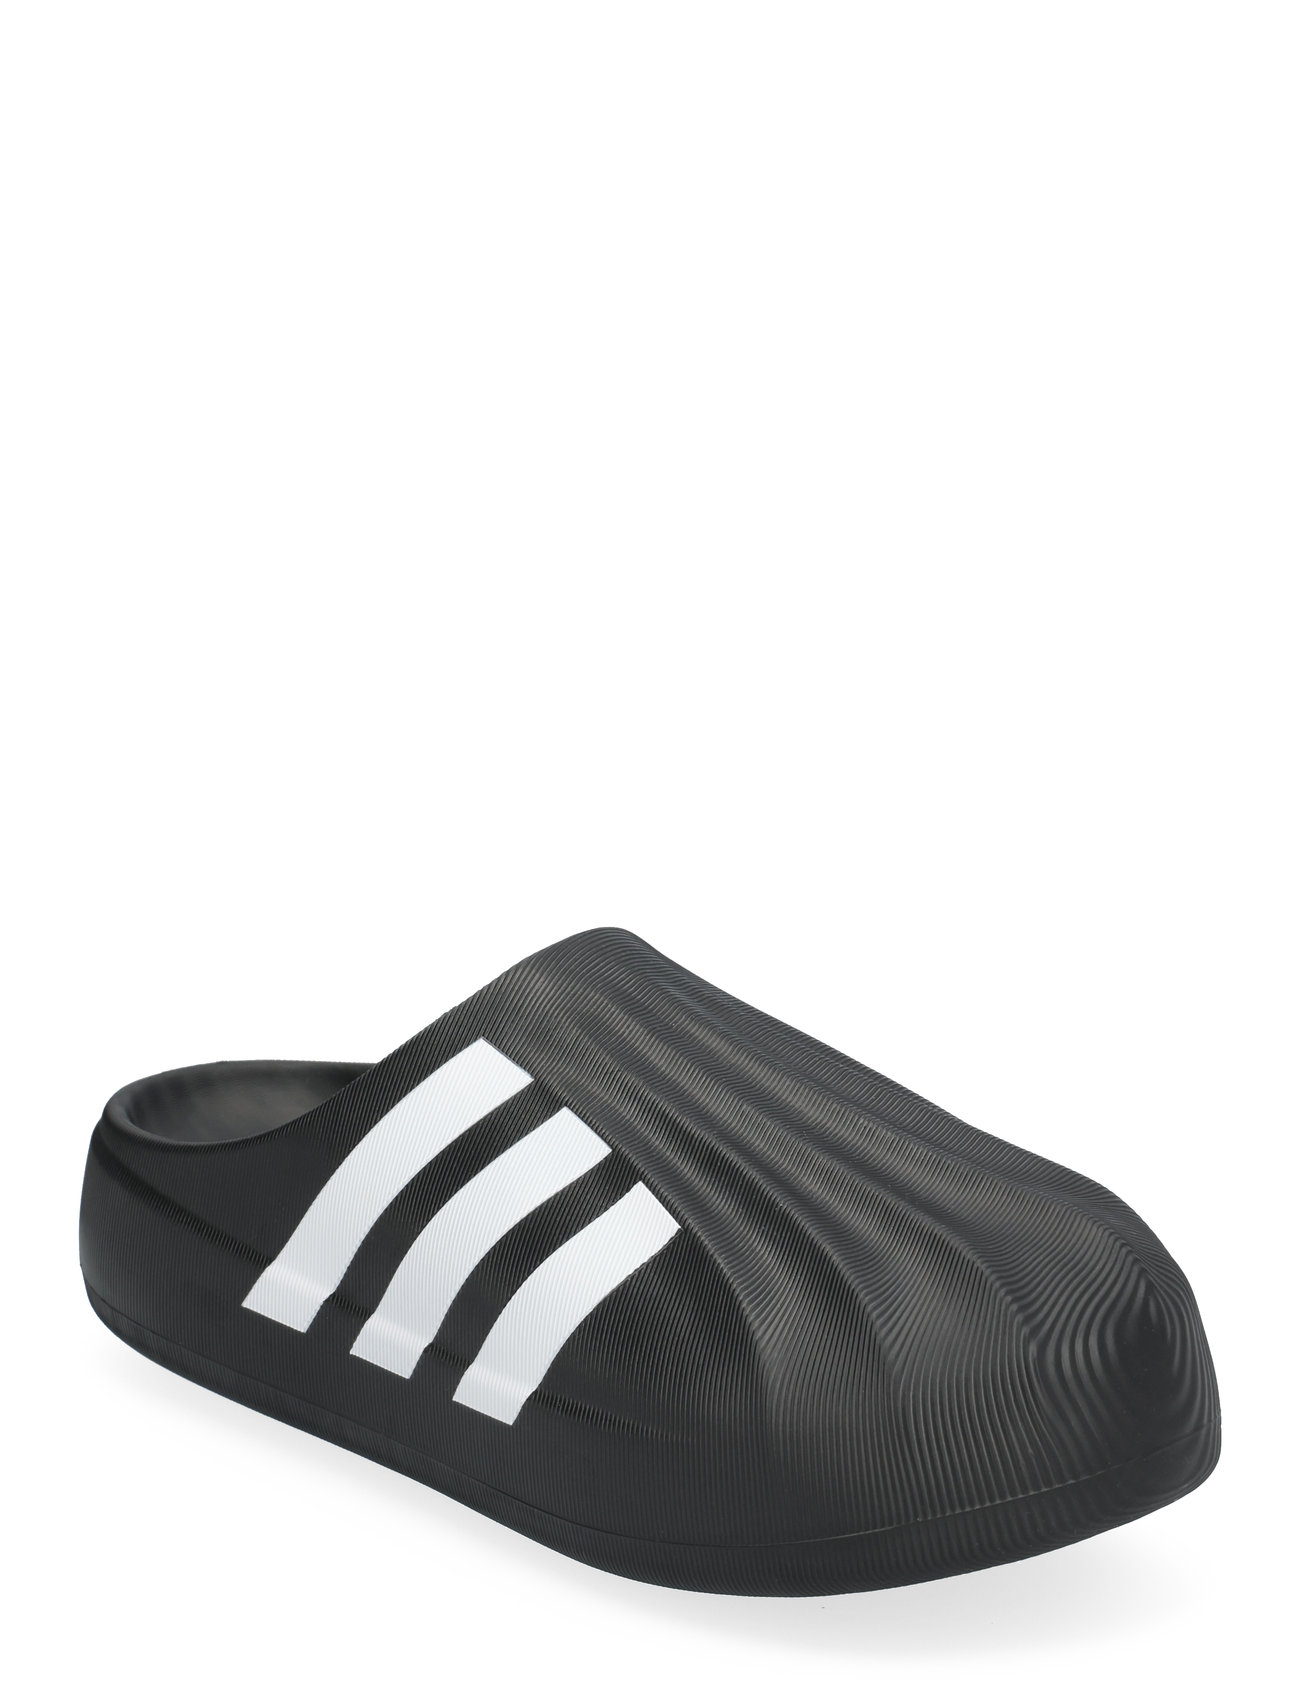 Adifom Superstar Mule Sport Mules & Clogs Black Adidas Originals